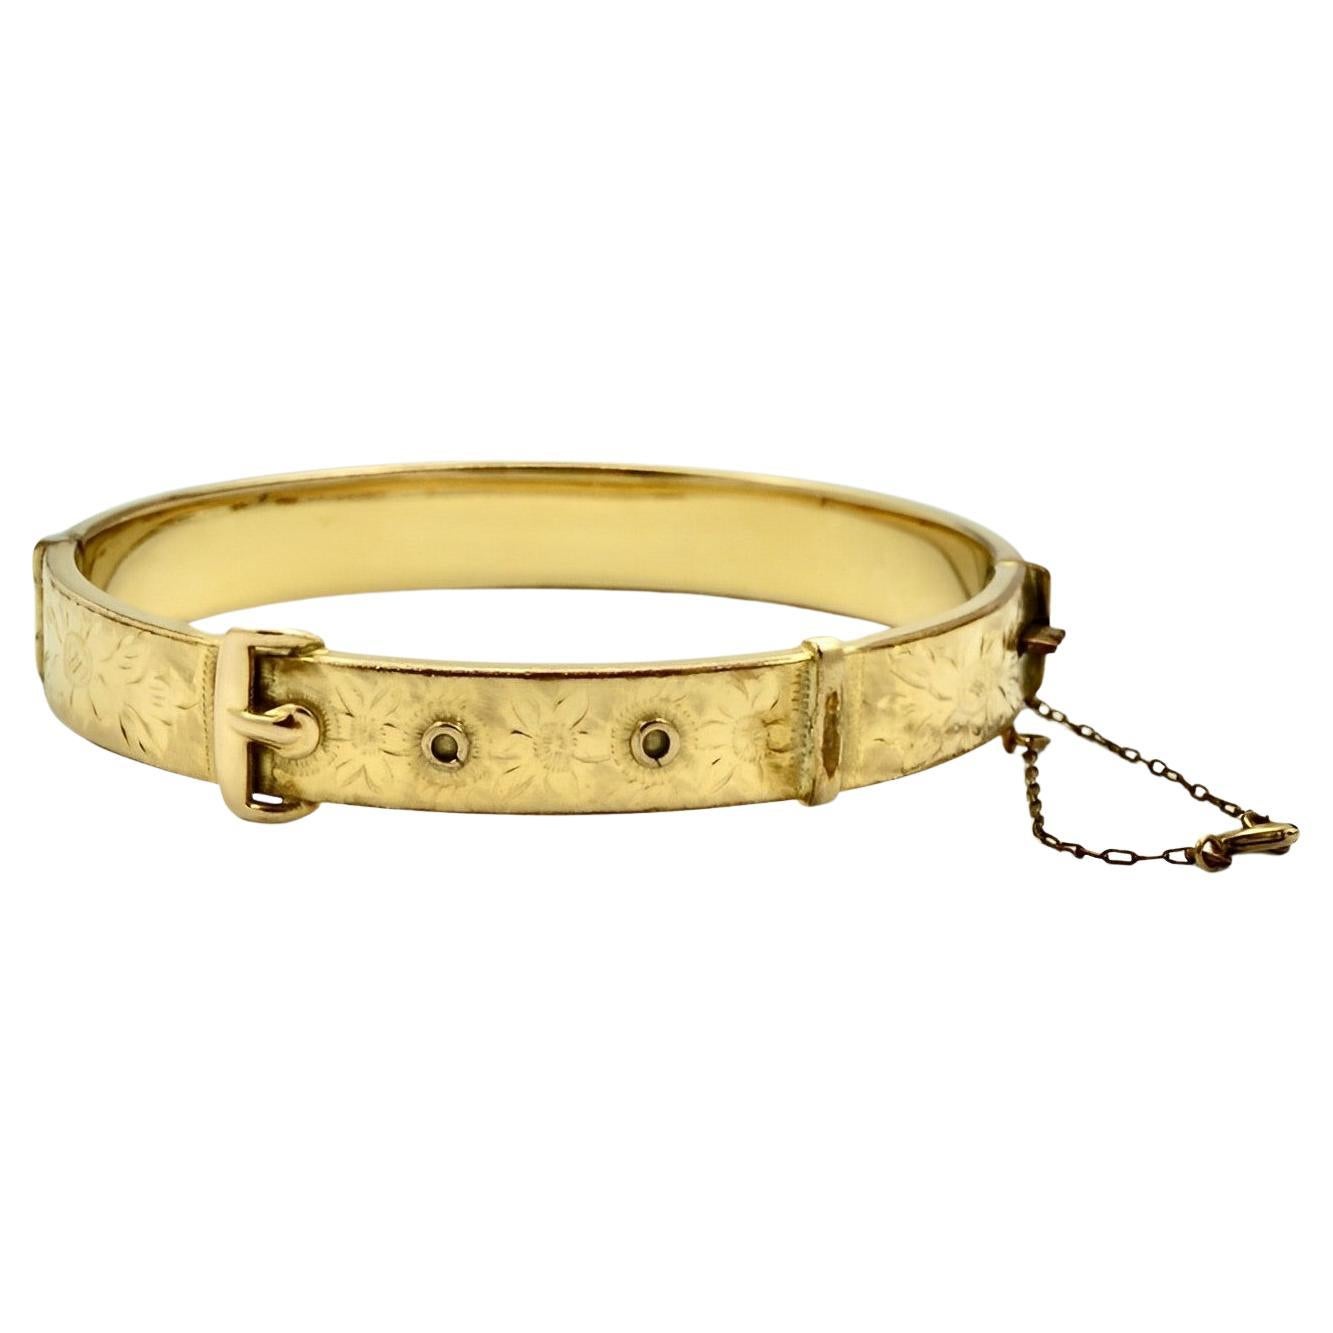 Buy Vintage Rolled Gold Snake Bracelet Online in India - Etsy